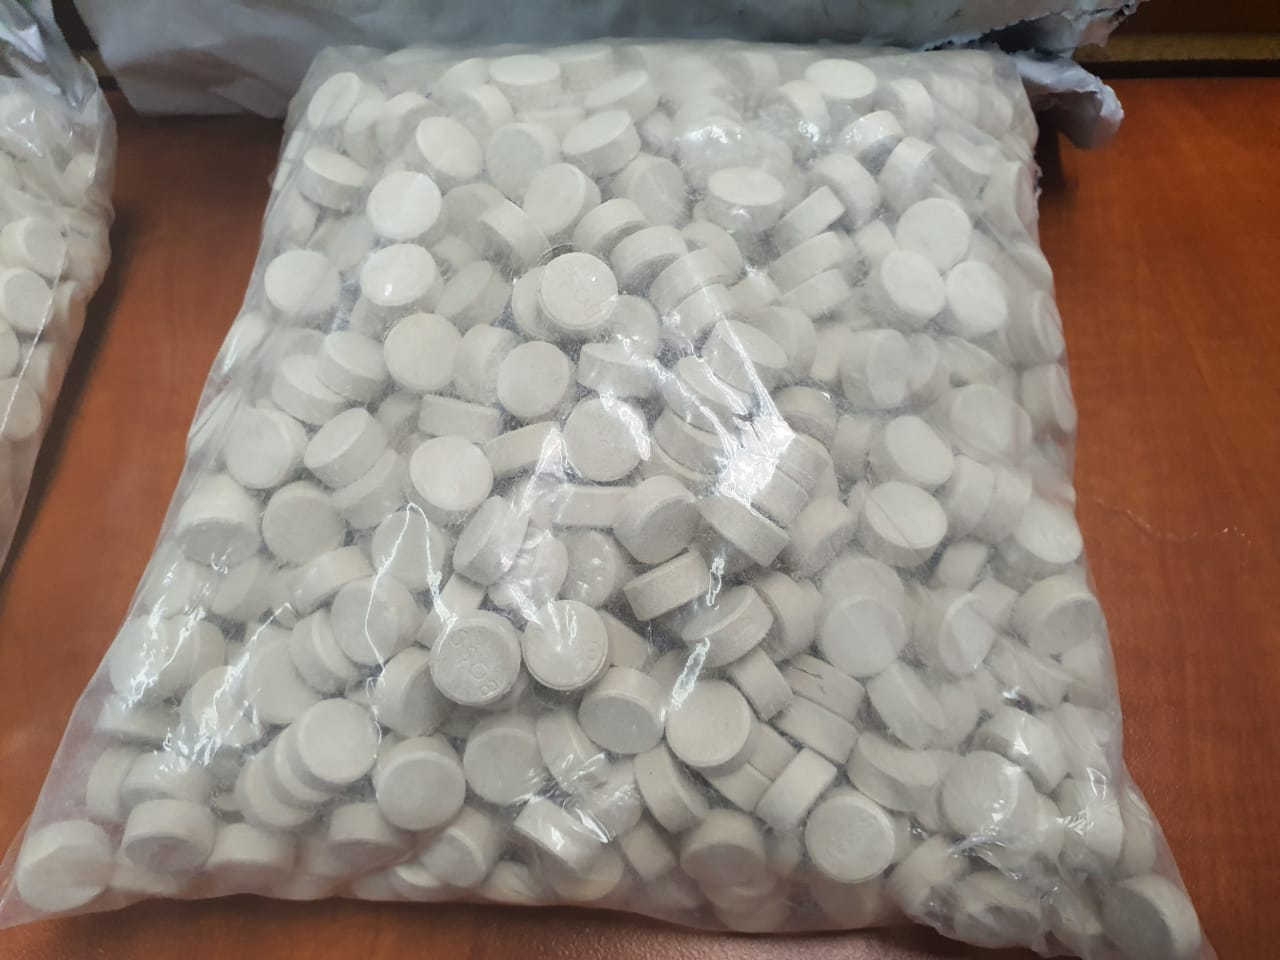 Mandrax tablets, heroine capsules, methaqualone powder